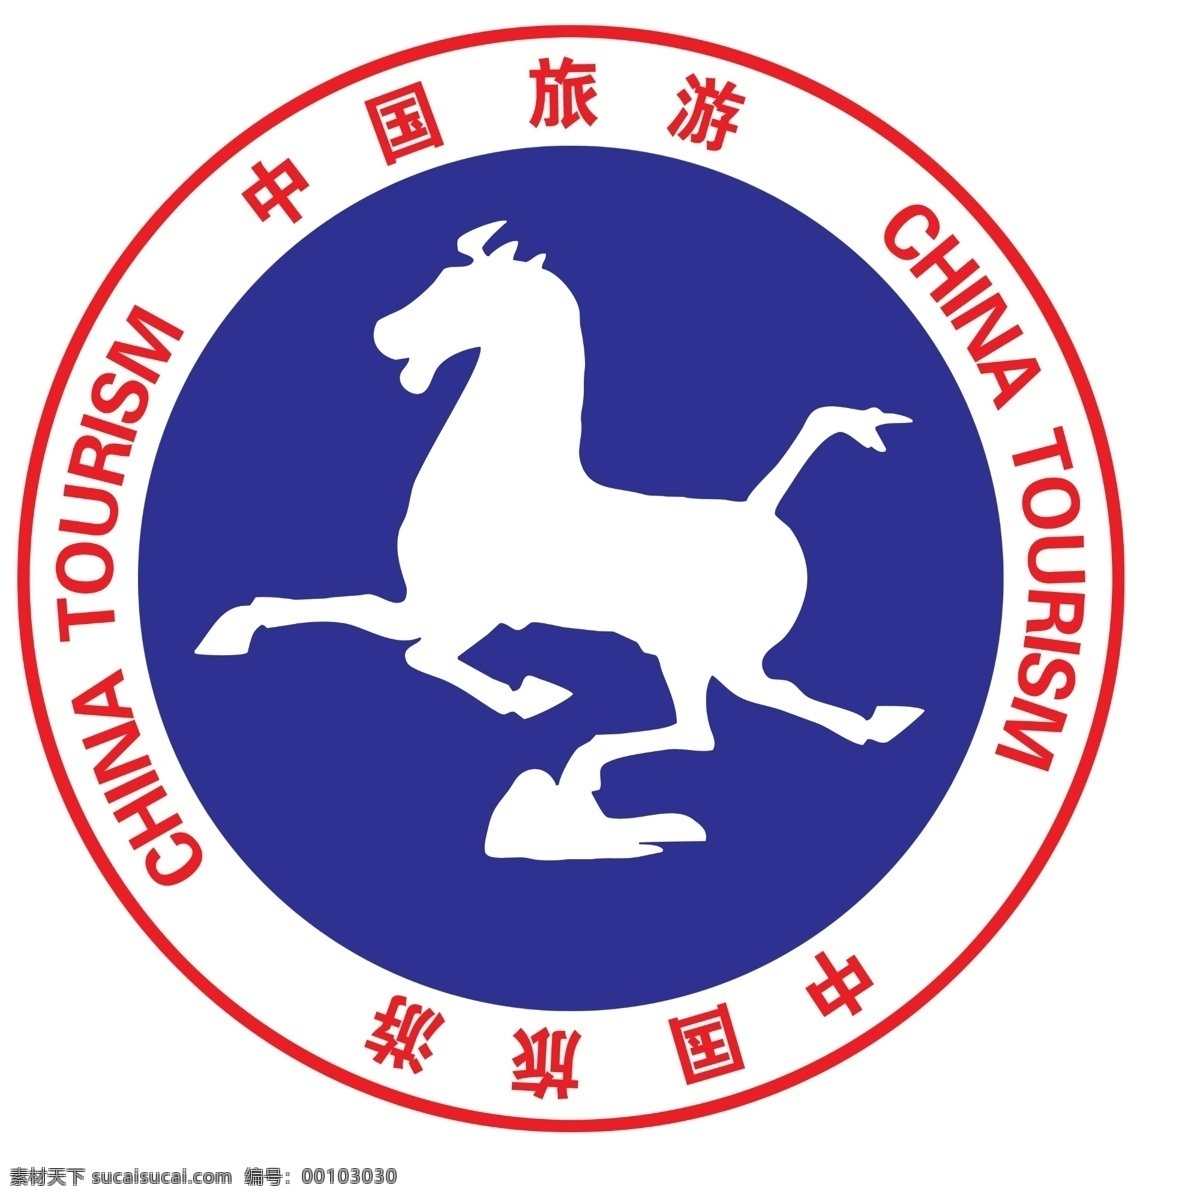 中国旅游标志 中国旅游 标志 分层 格式 高 分辨率 源文件库